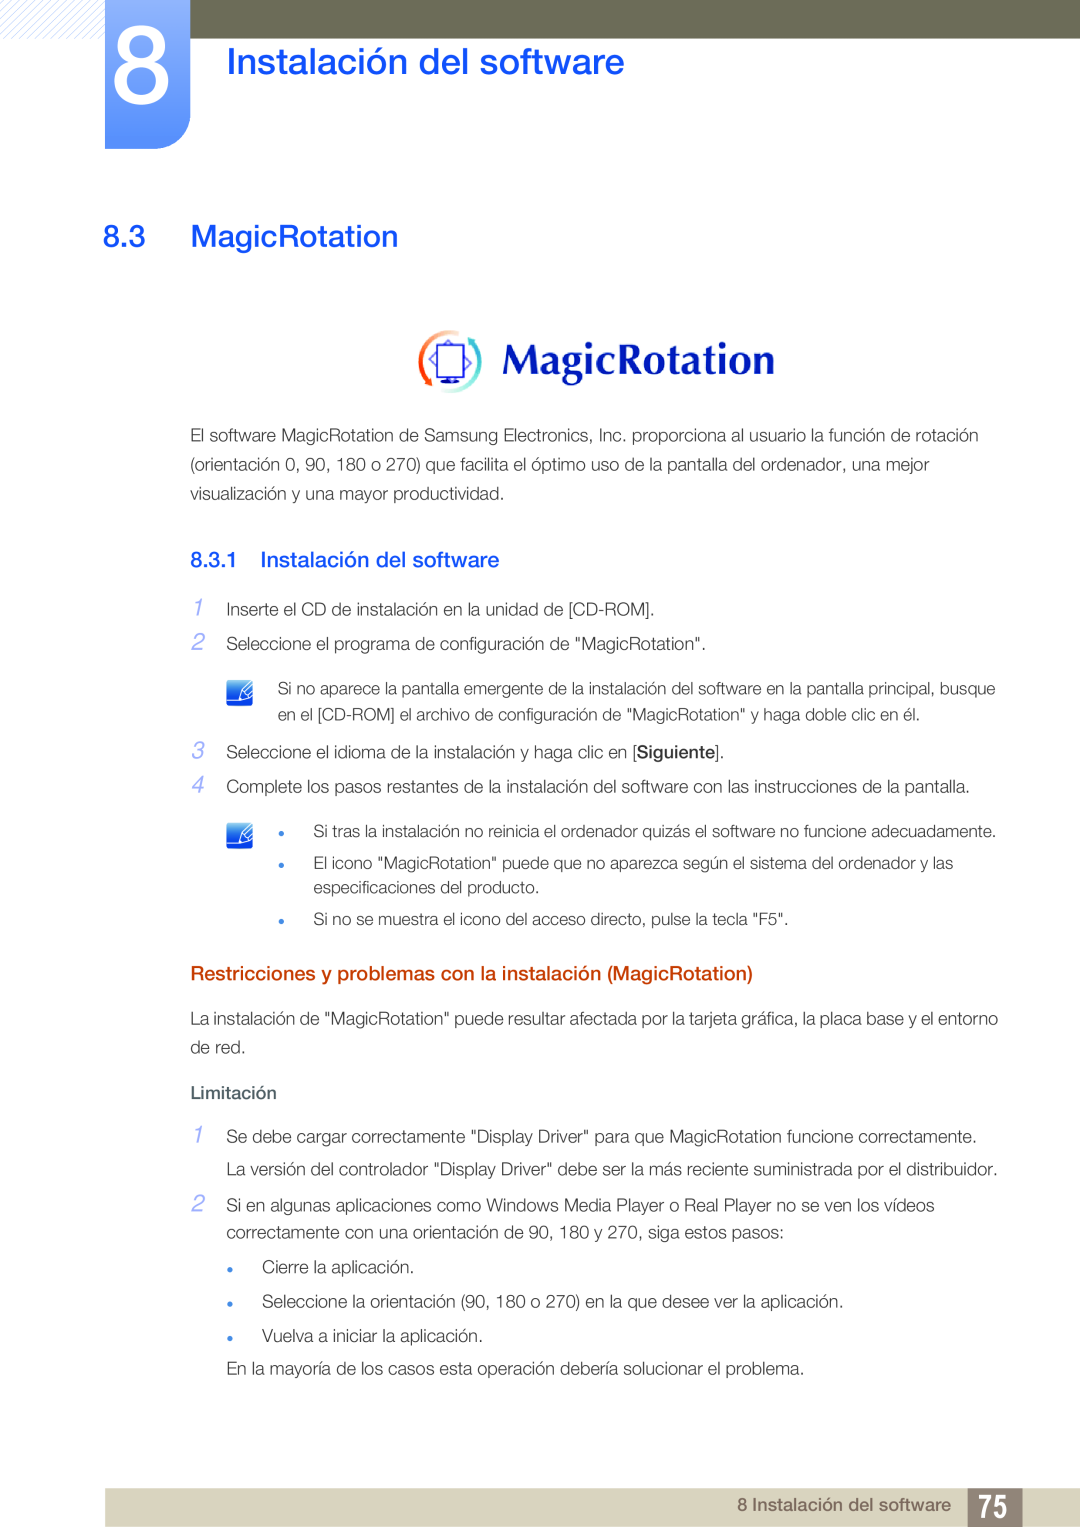 Samsung LS19C45KBW/EN Instalación del software, Restricciones y problemas con la instalación MagicRotation, Limitación 